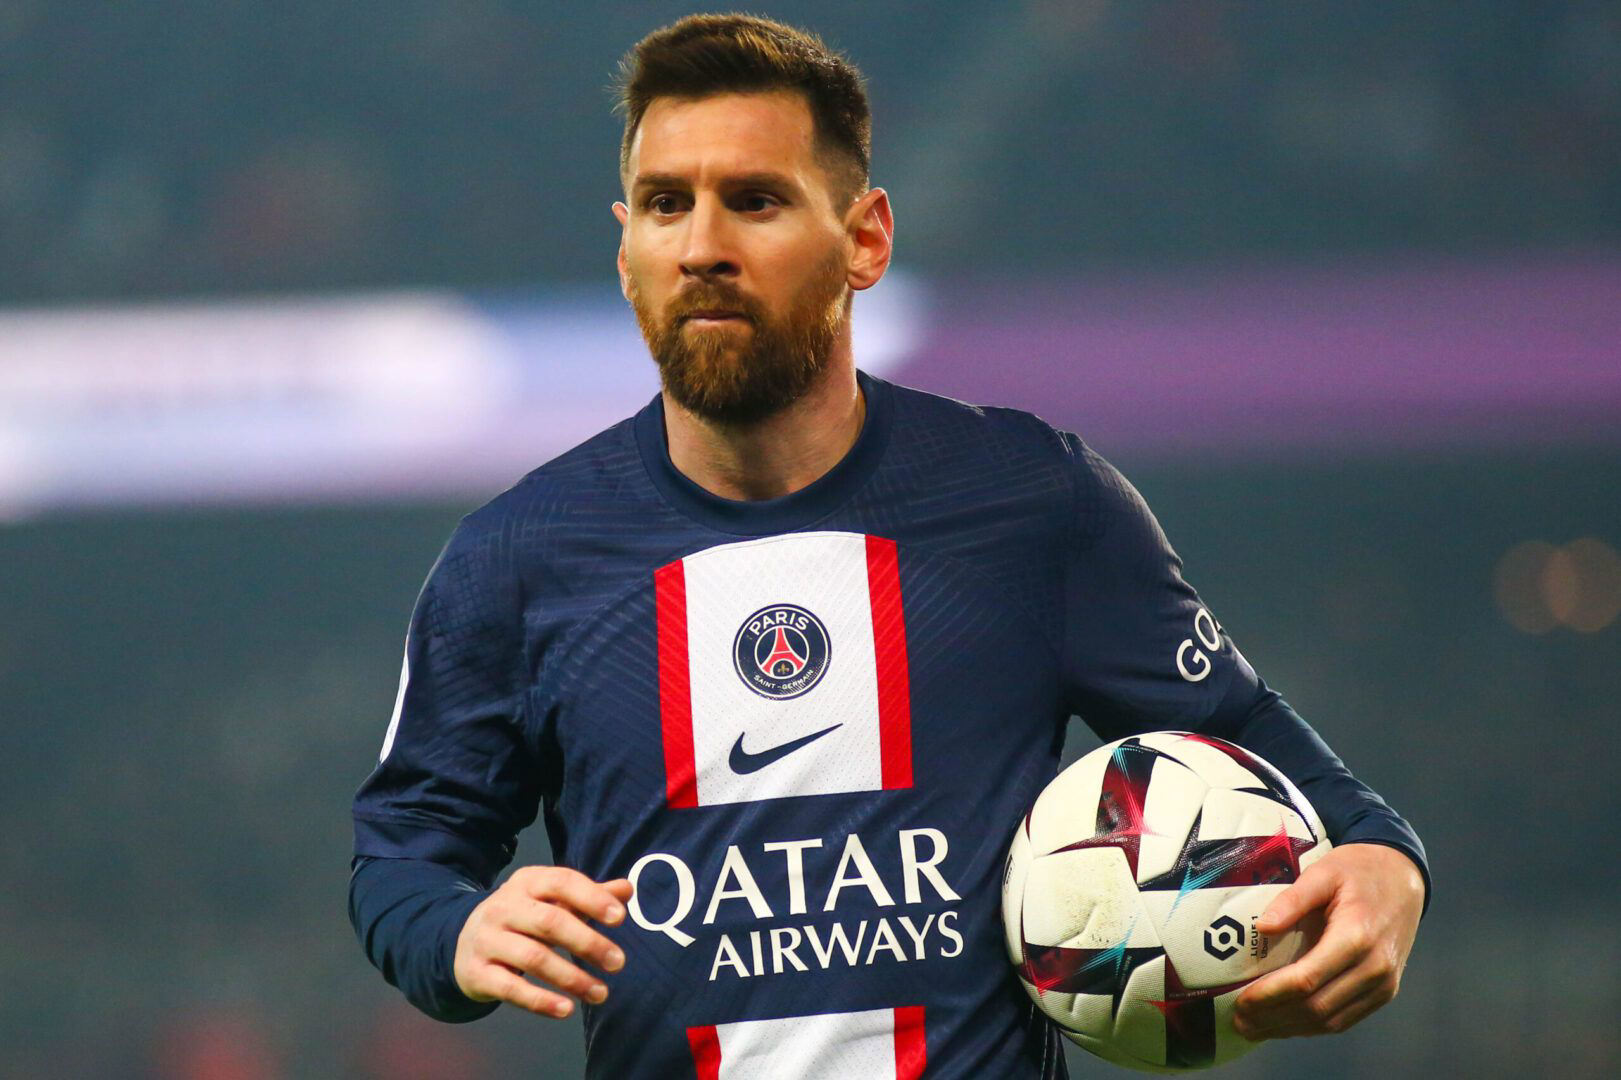 Is Lionel Messi richer than Cristiano Ronaldo?